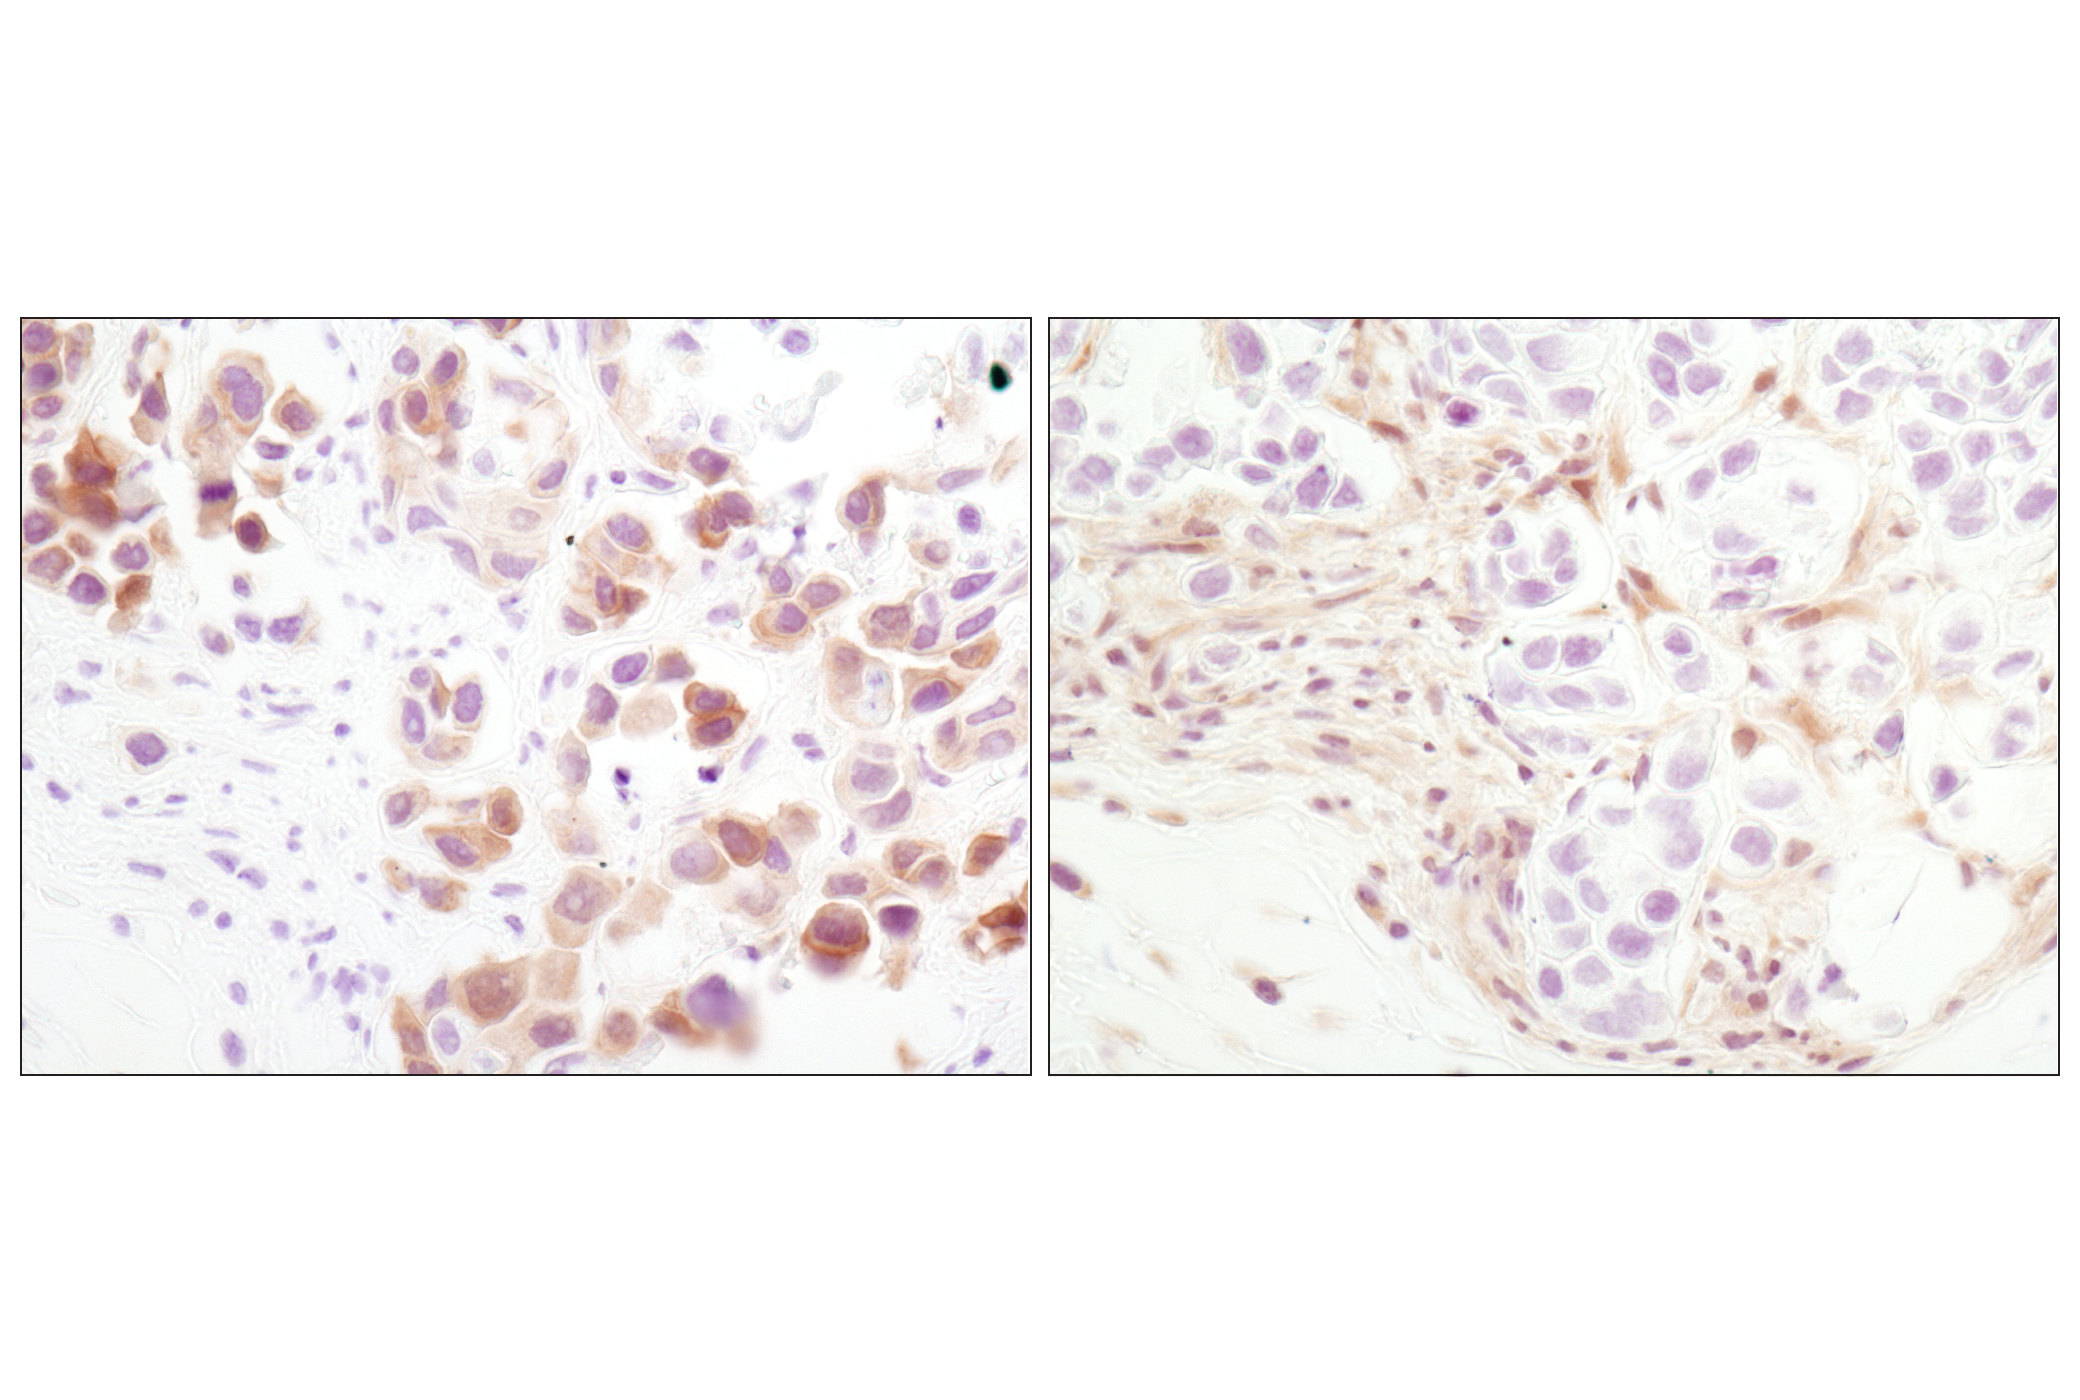  Image 41: Oncogene and Tumor Suppressor Antibody Sampler Kit